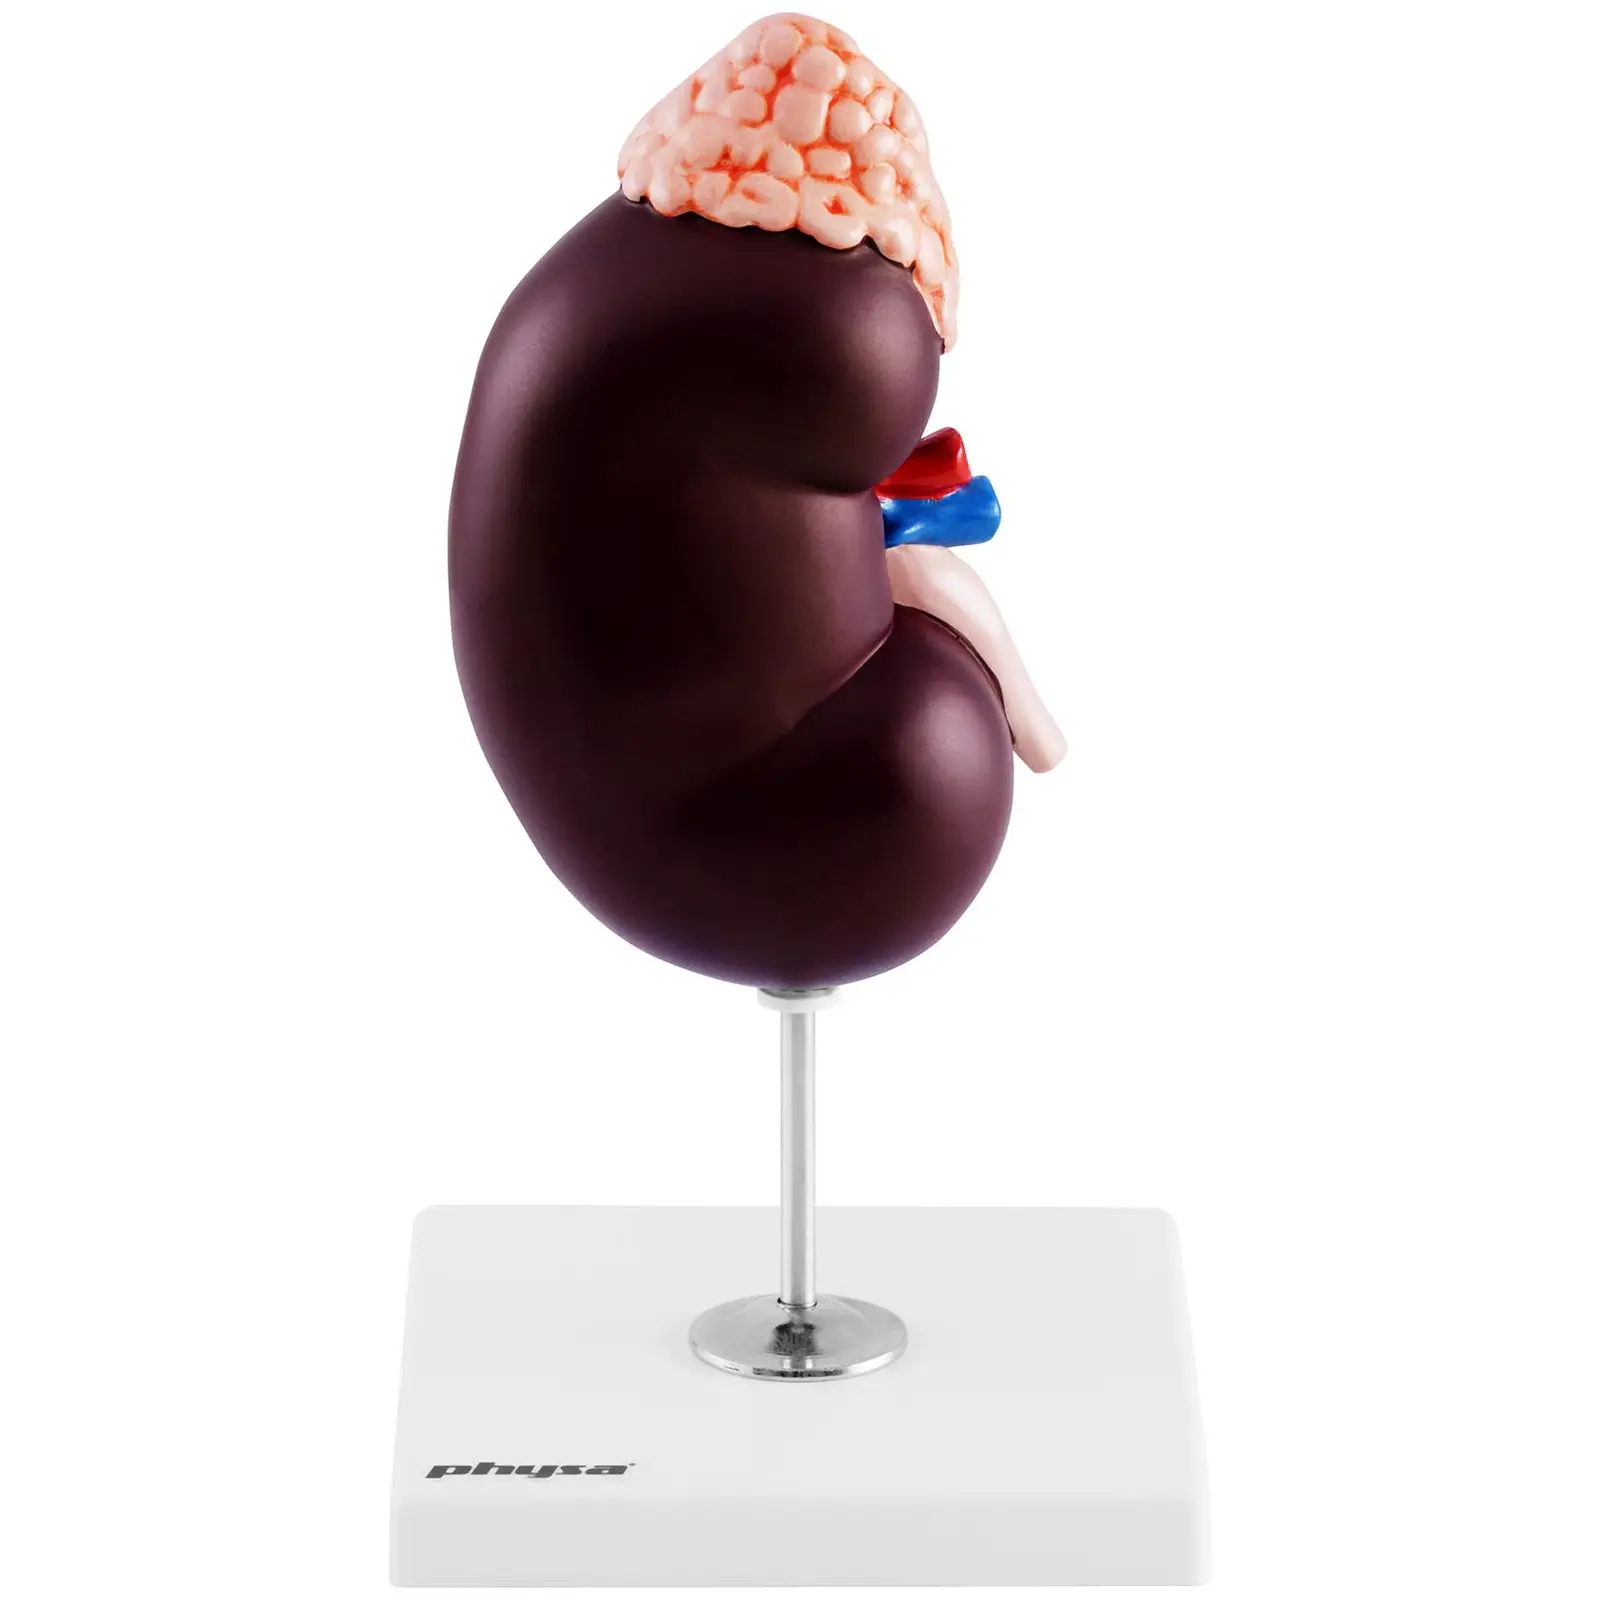 Model ledviny - 1,5násobné zvětšení